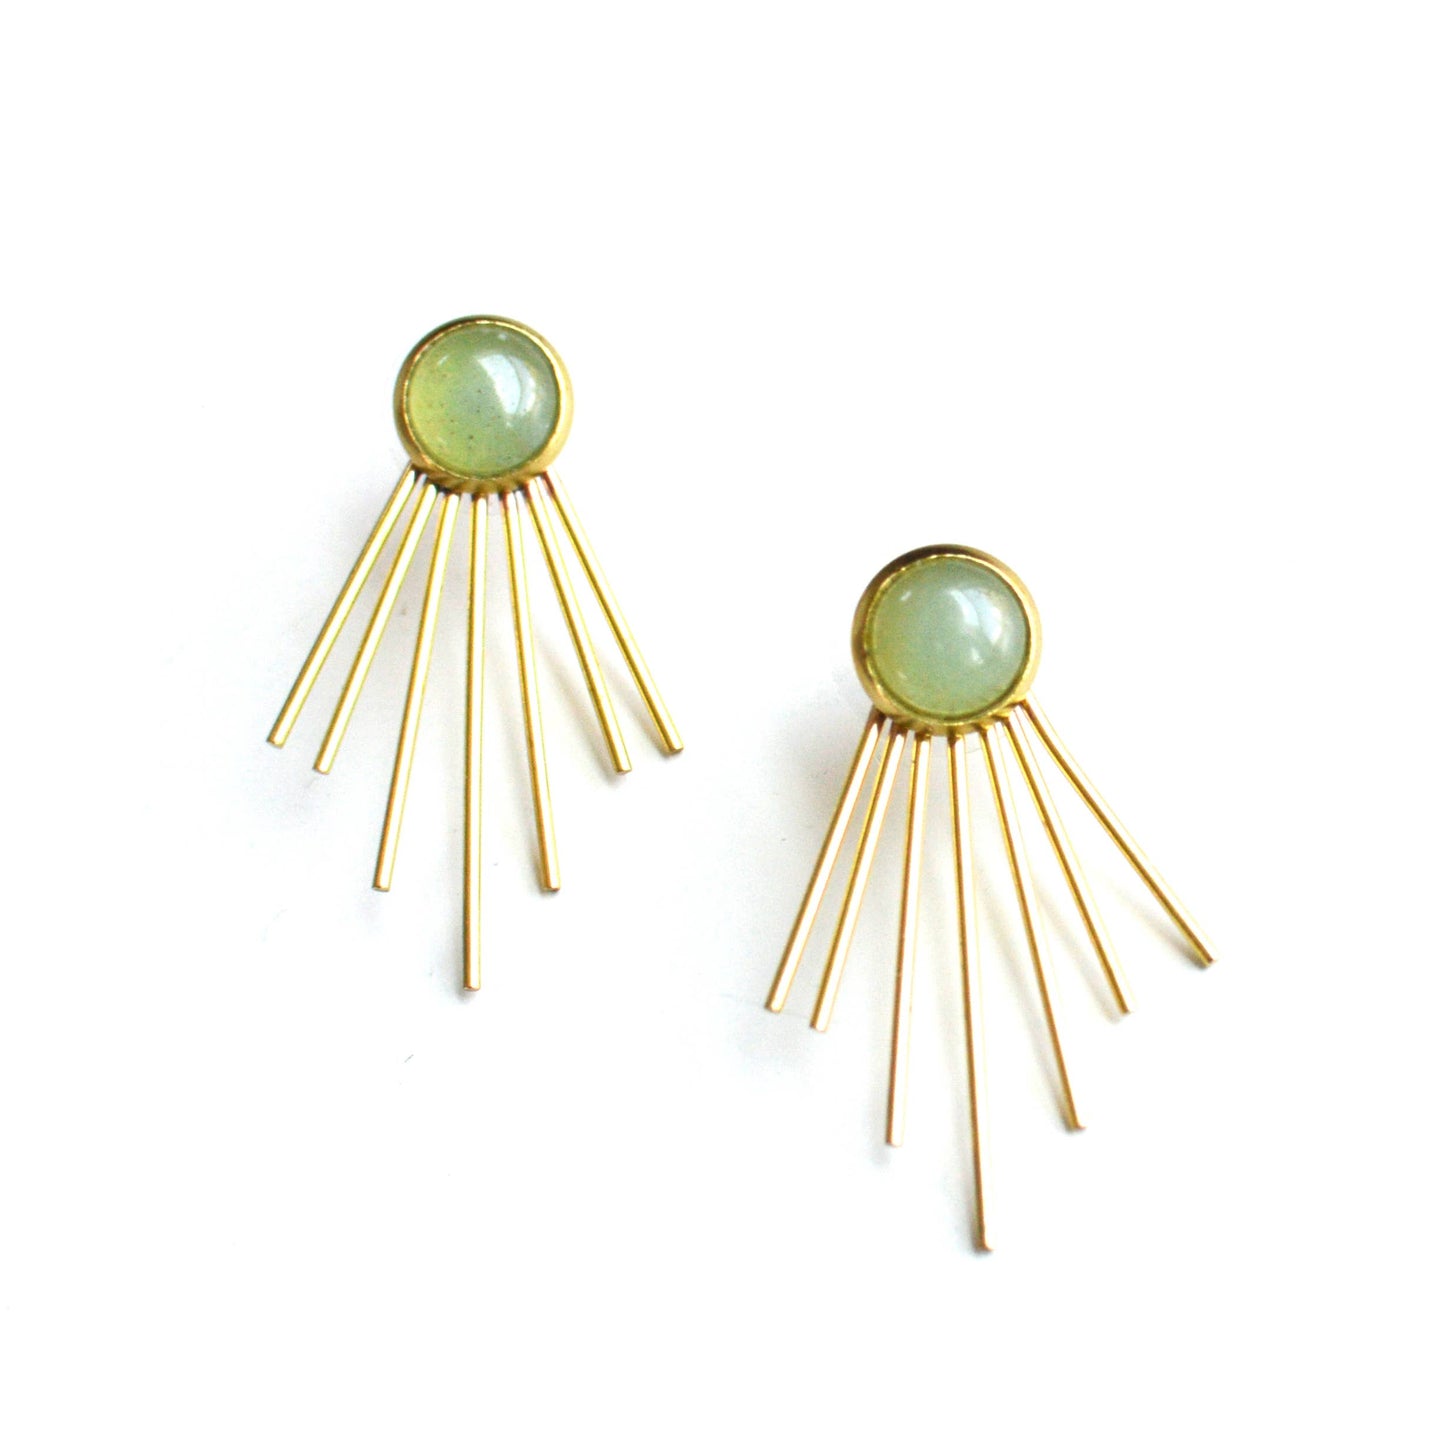 Ker-ij Jewelry - Judy Jacket Earrings: Green Aventurine